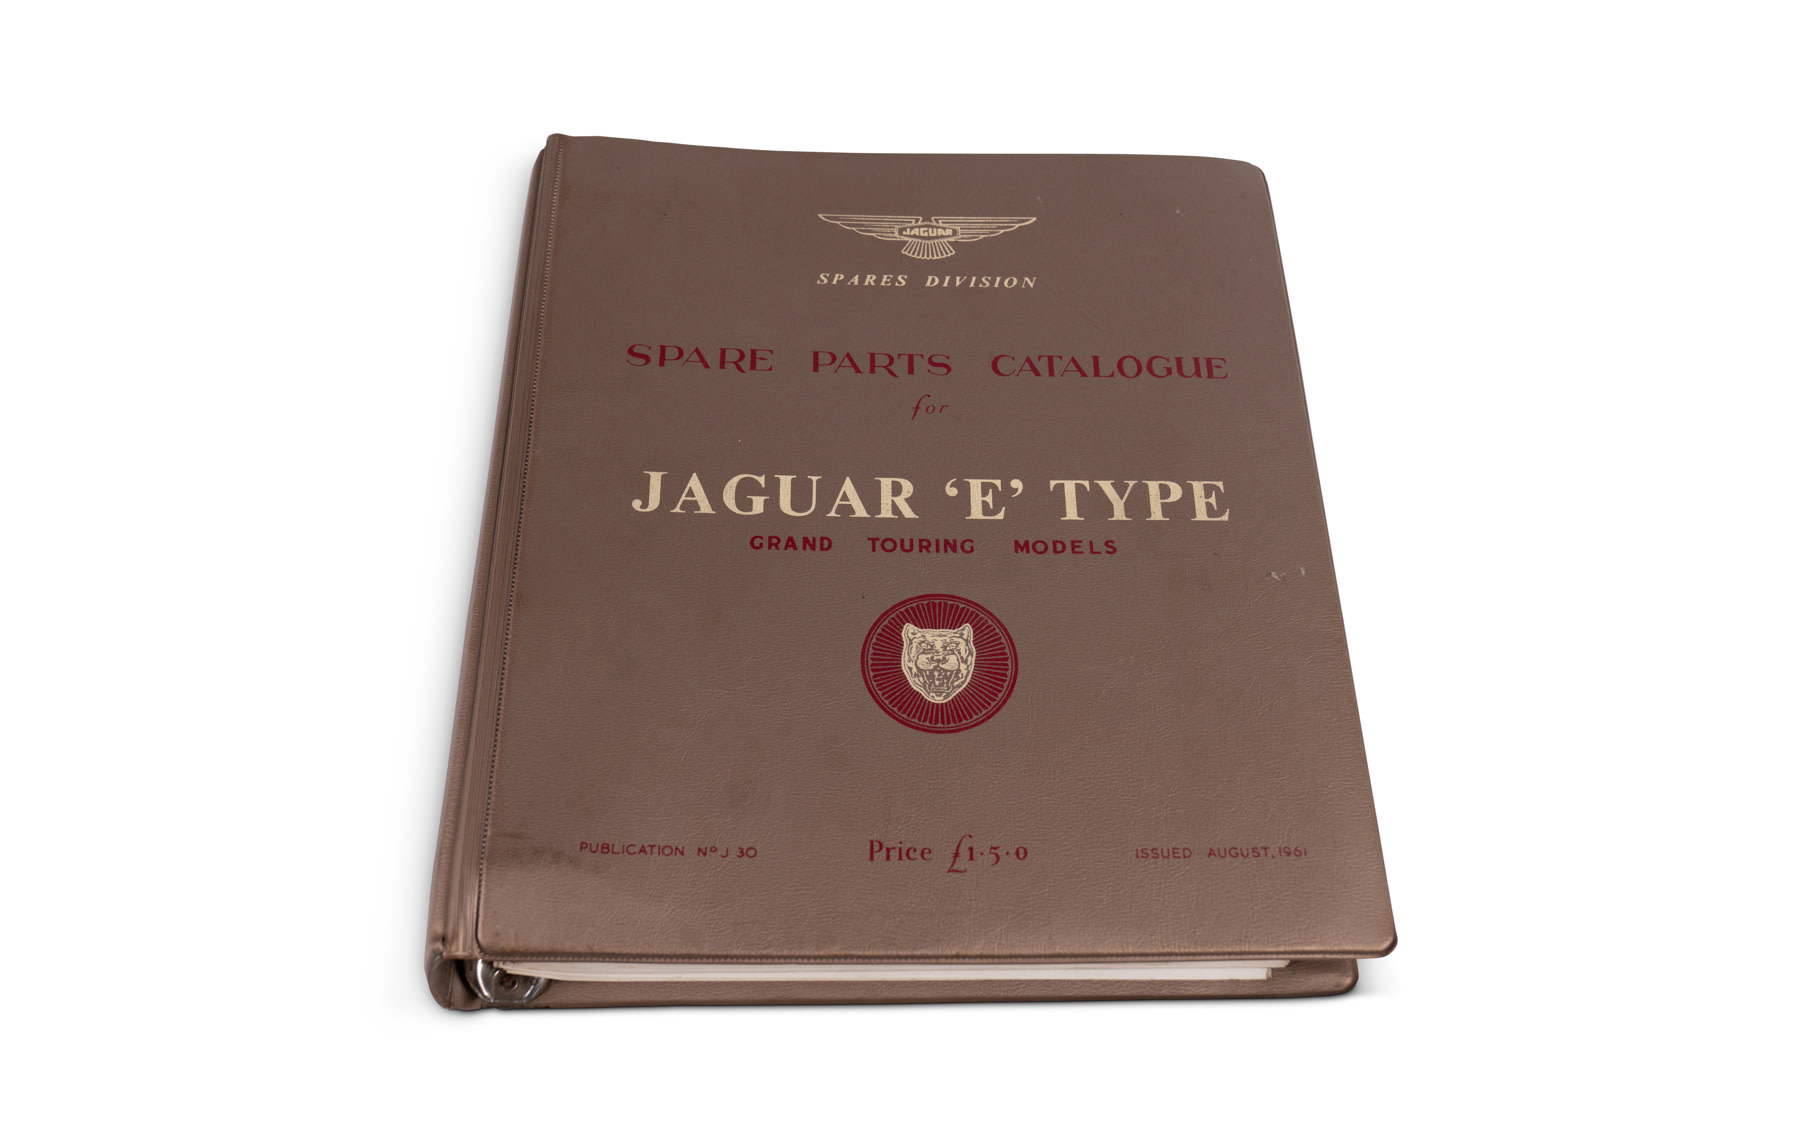 Spare Parts Catalogue for Jaguar 'E' Type, 1961